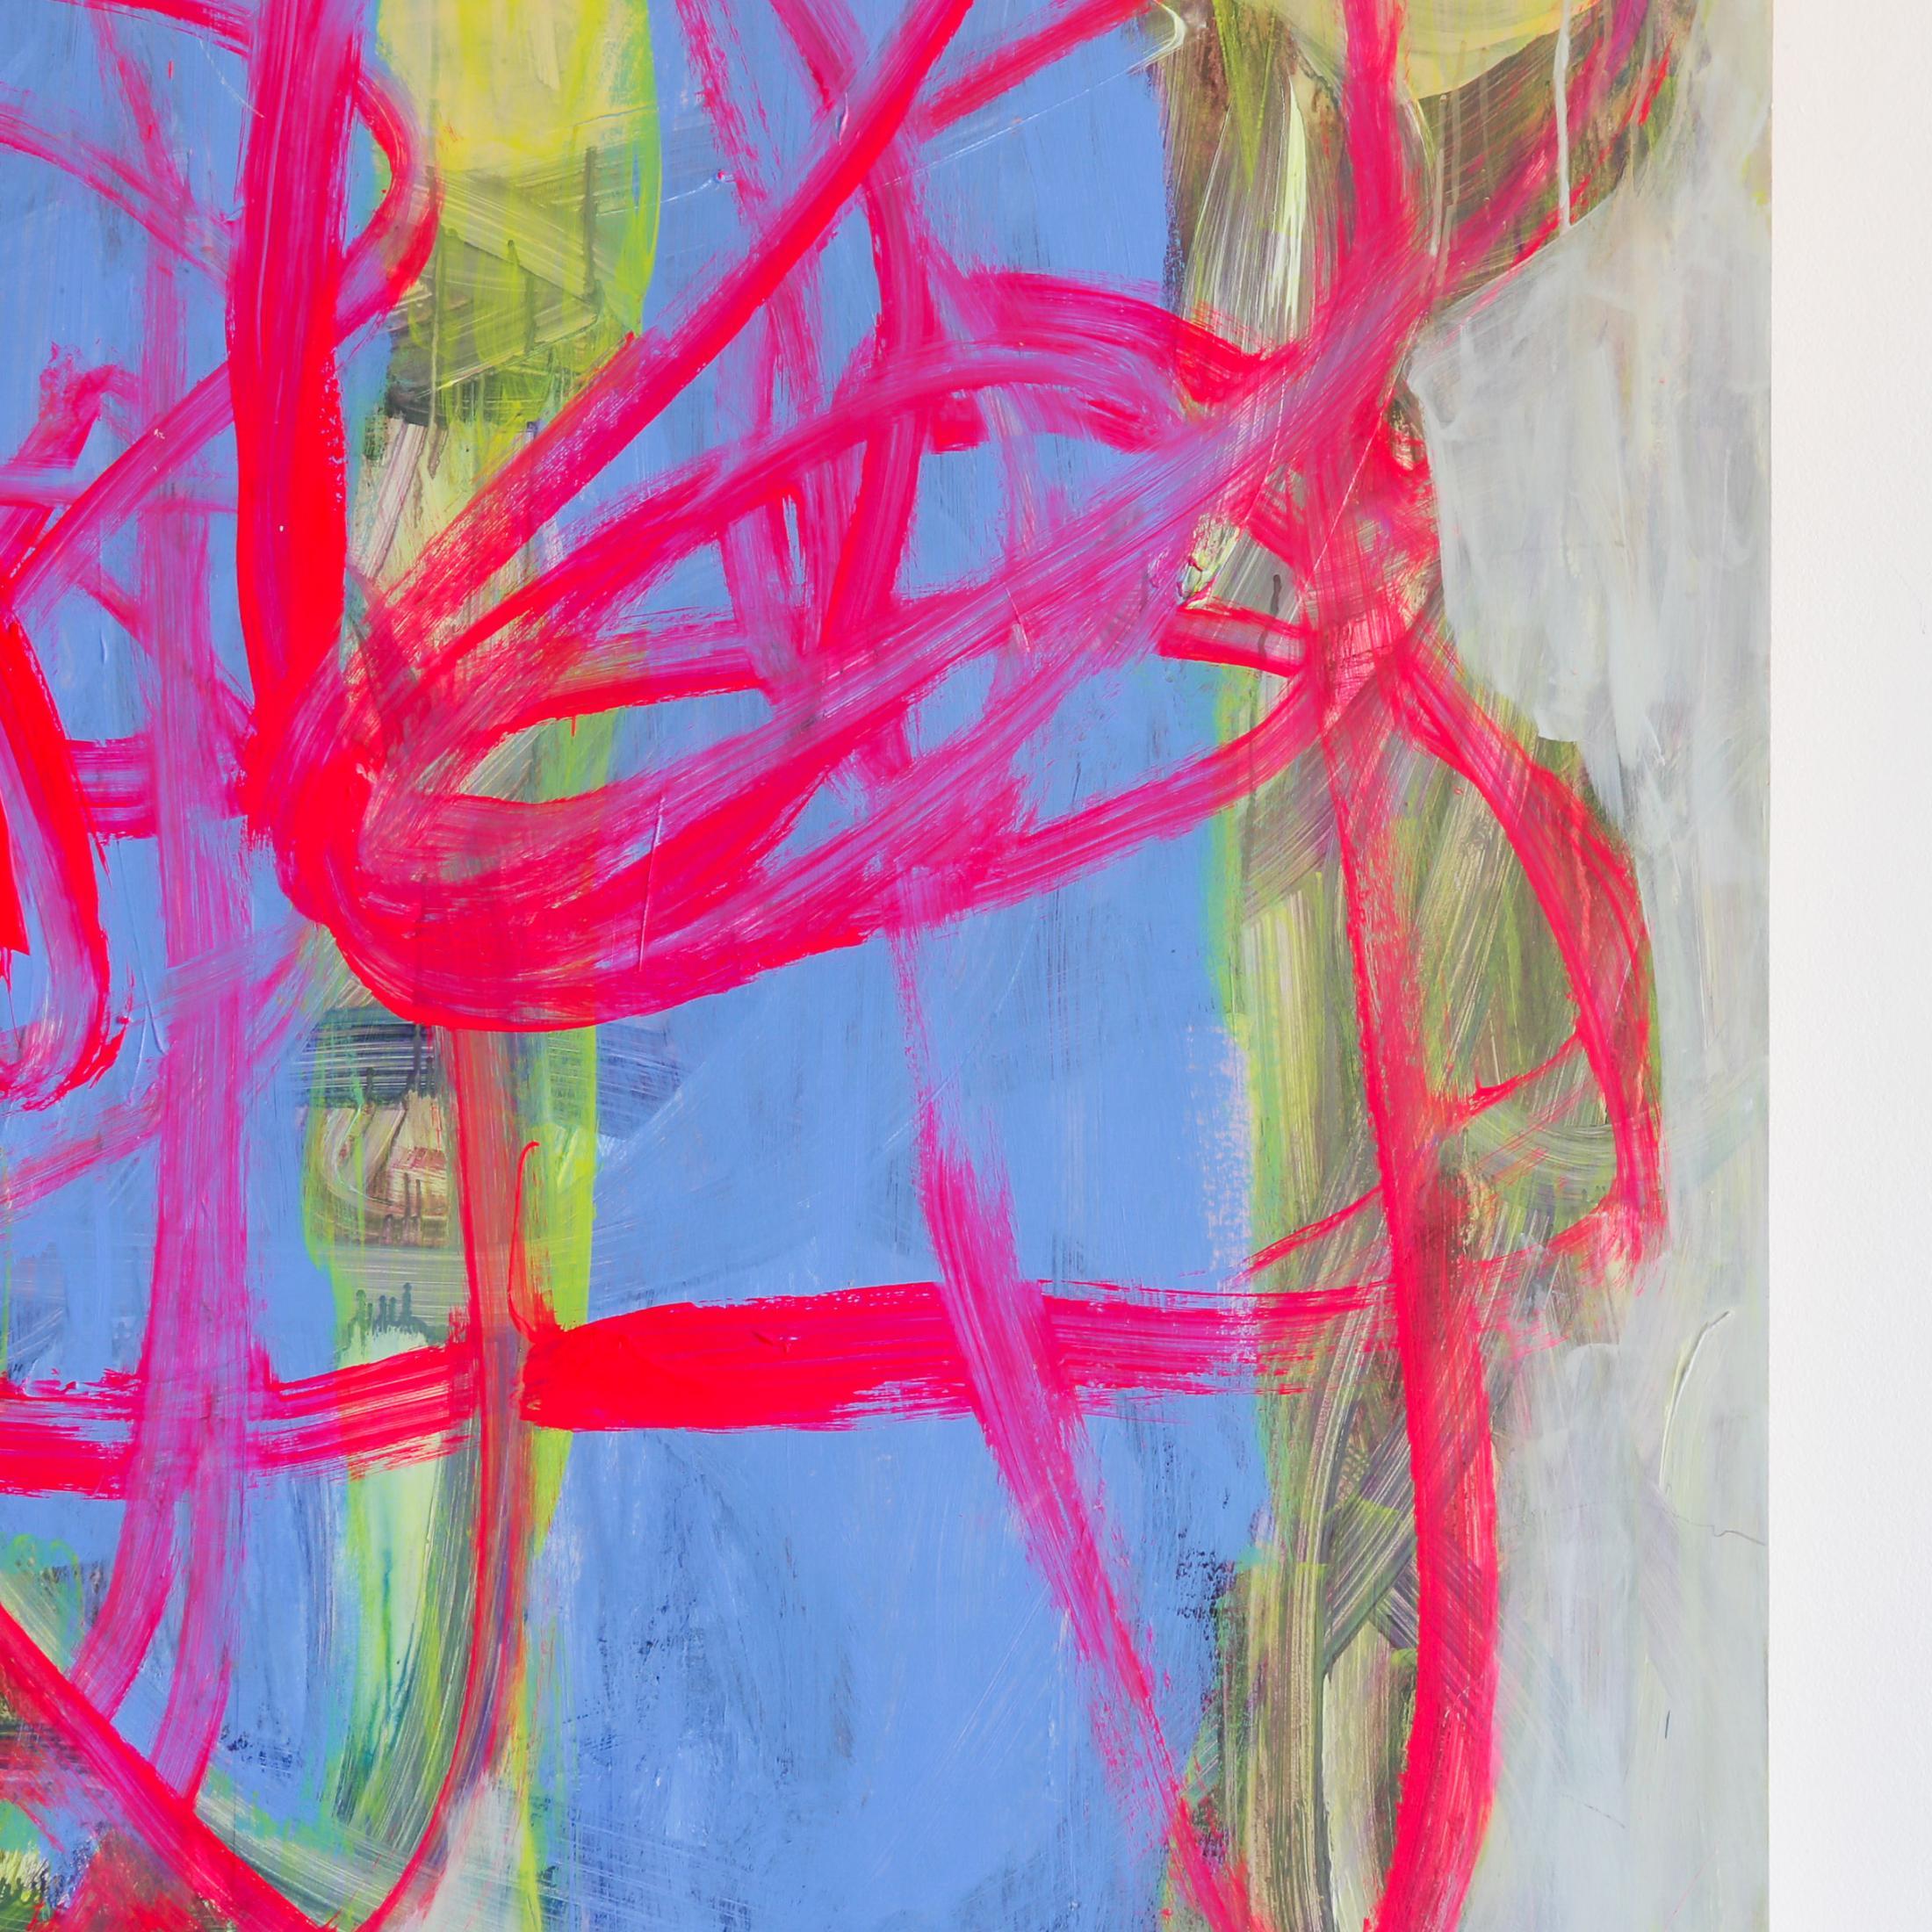 Yum Three de l'artiste Brenda Zappitell est une œuvre abstraite contemporaine rose, bleue et grise composée de flashe et d'acrylique avec de la cire froide sur un panneau de 60 x 60. Son prix est de 16 000 $.

Brenda Zappitell crée des oeuvres